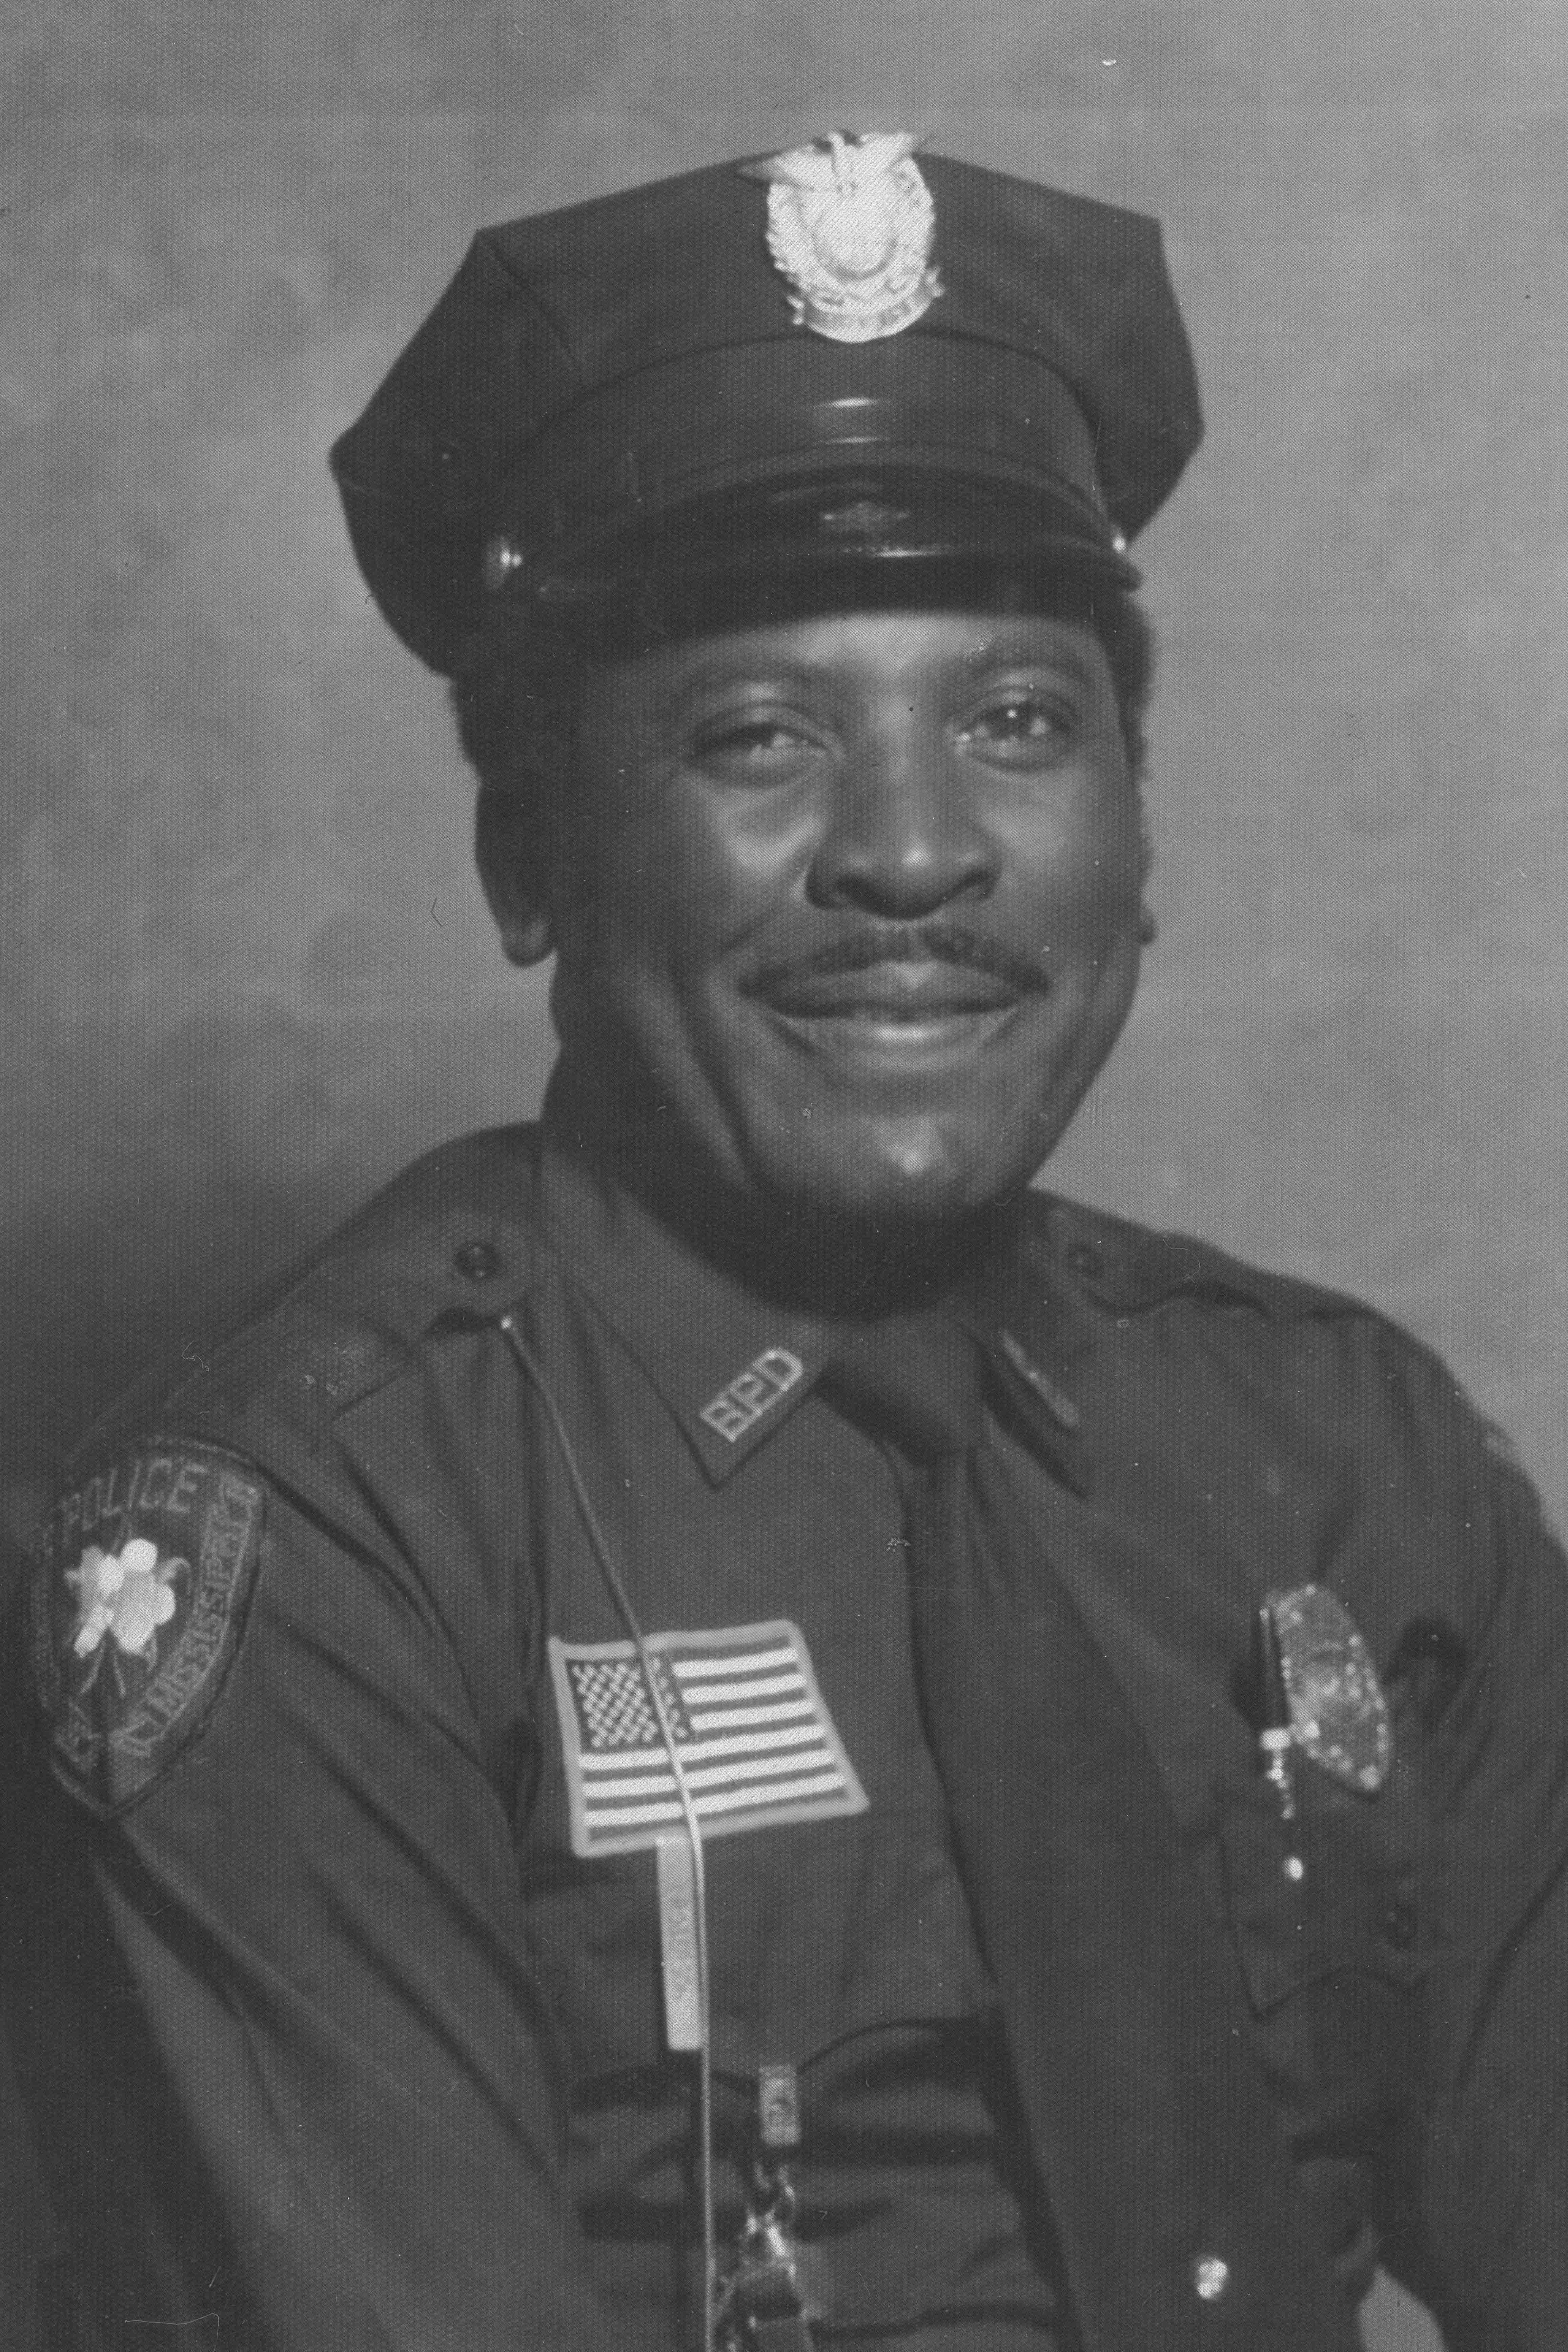 Officer Irvin Robinson